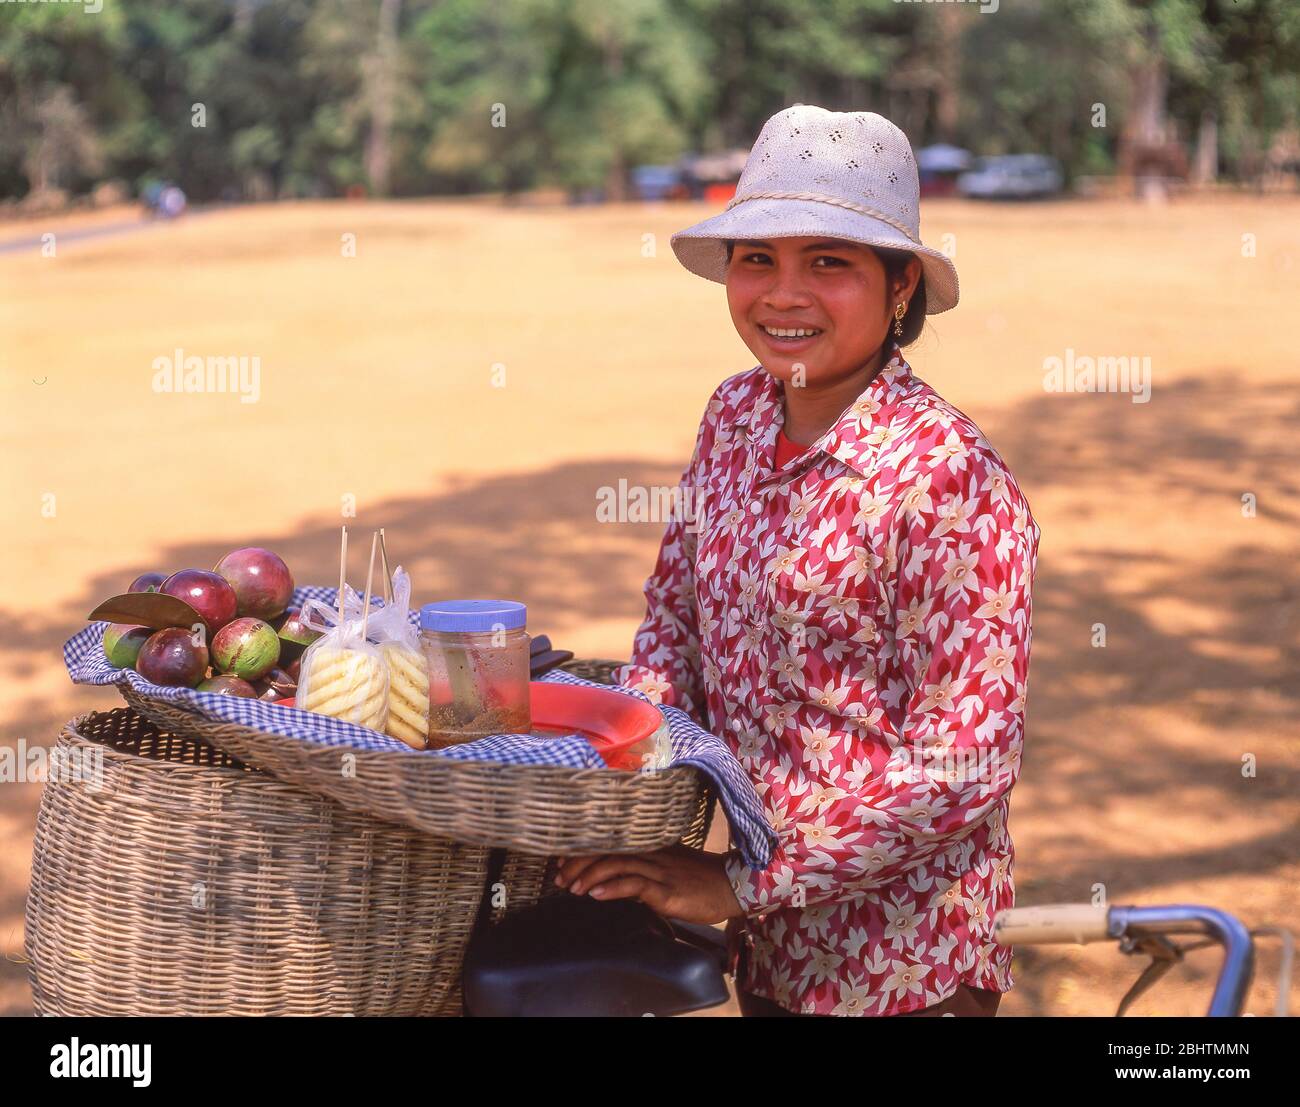 Jeune femme vendeur de fruits, Angkor Thom, Siem Reap, Royaume du Cambodge Banque D'Images